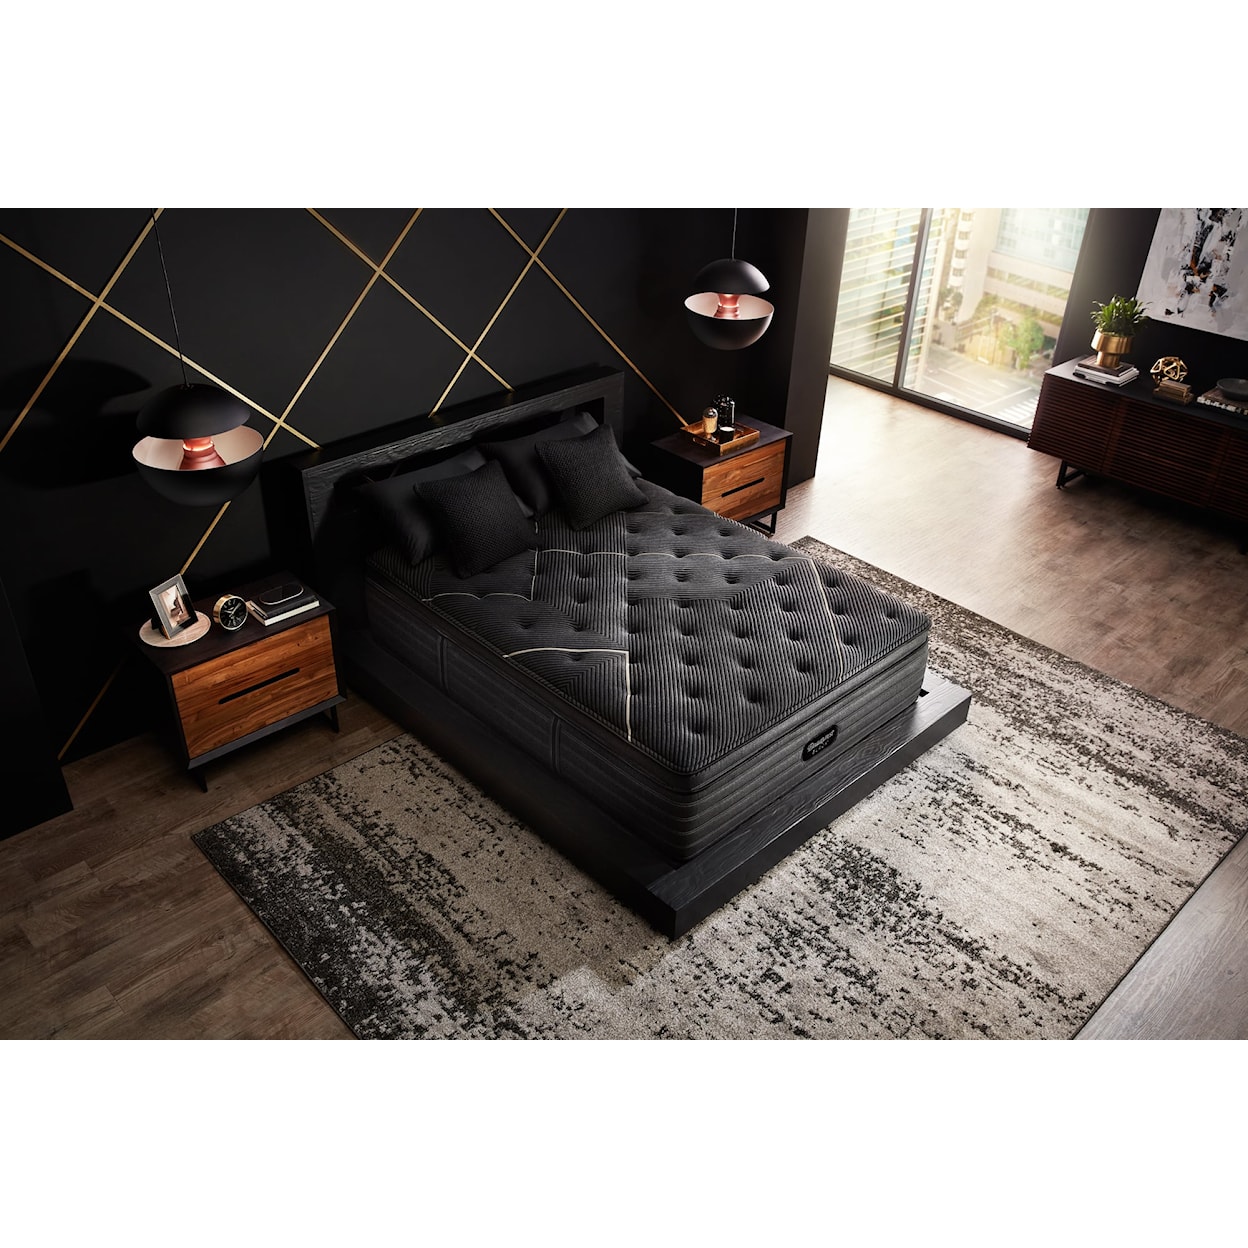 Beautyrest Beautyrest® Black K-Class 15.75" Firm Pillow Top Mattress - Queen